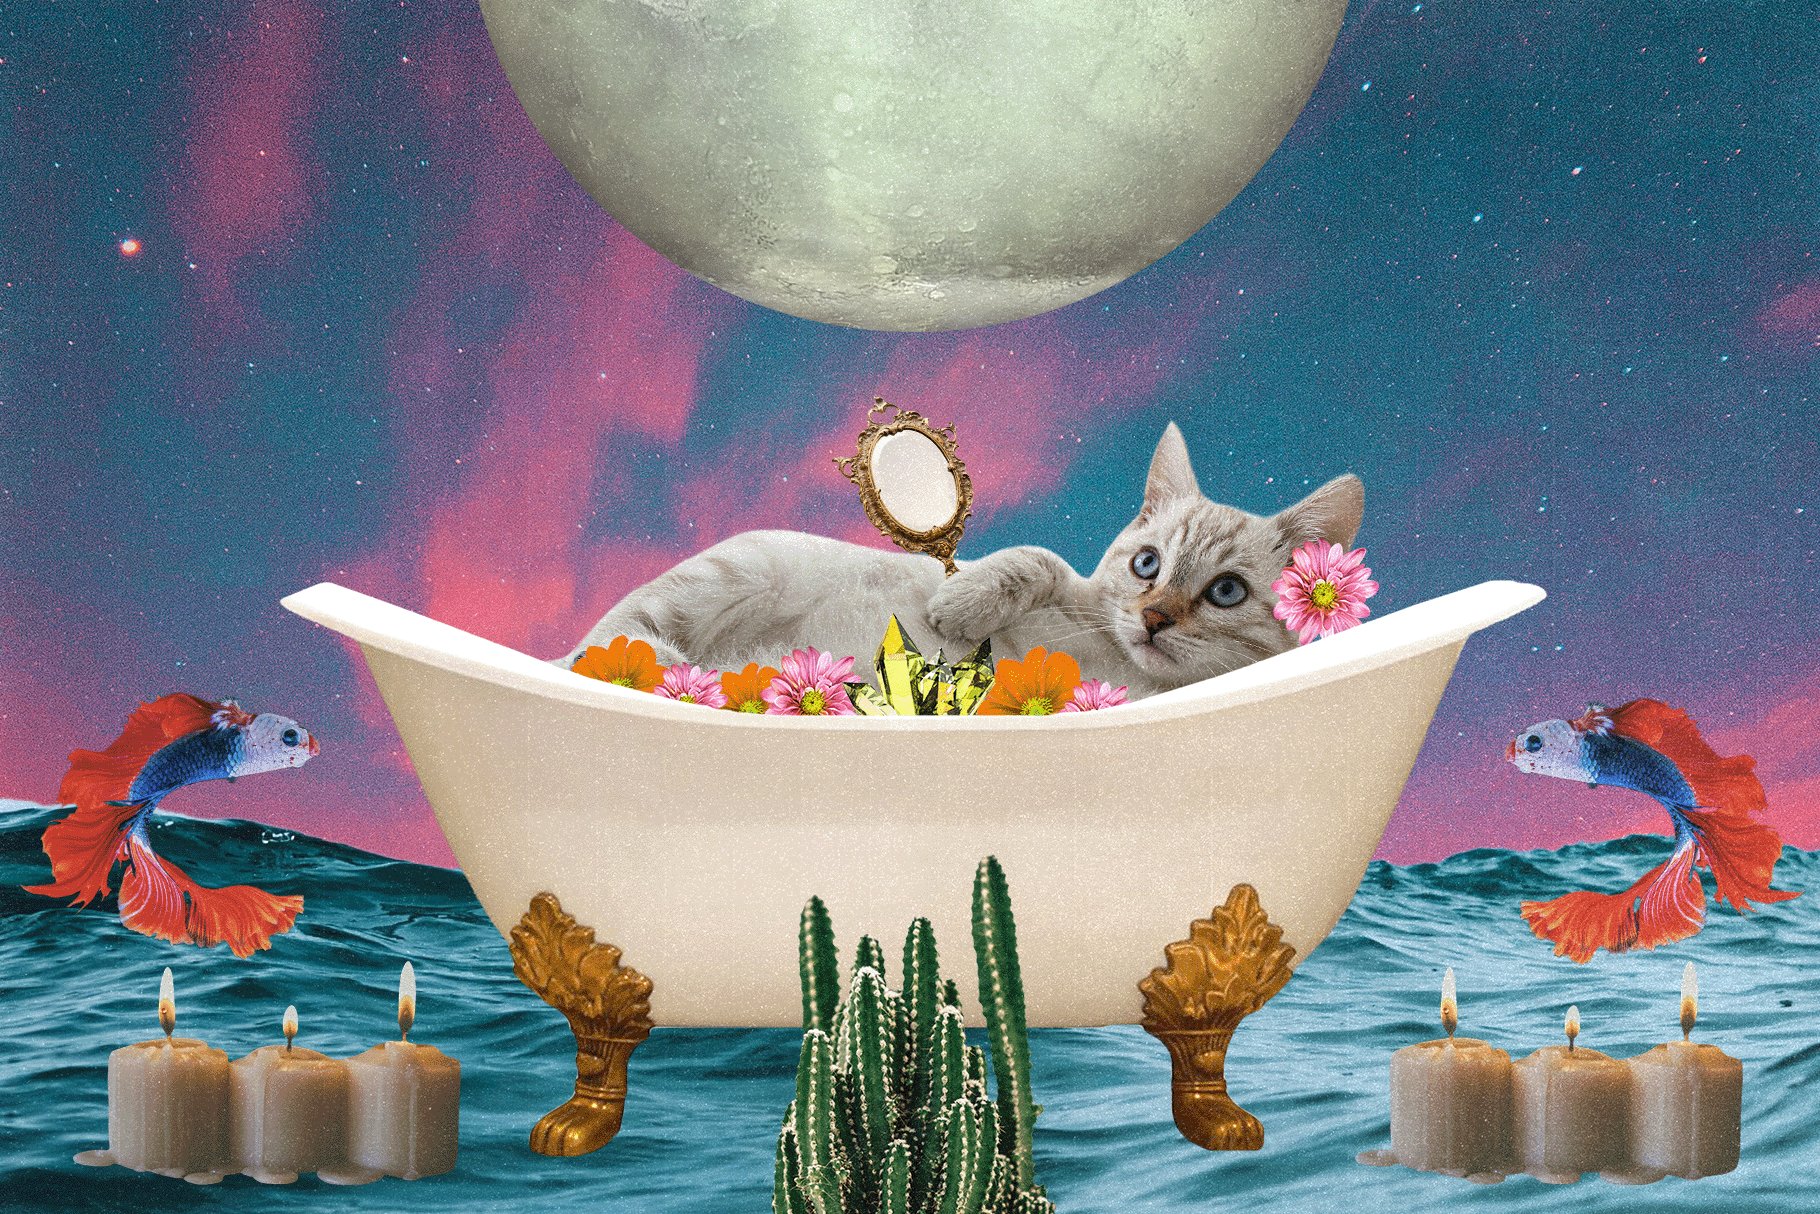 Funny cat in a bath.